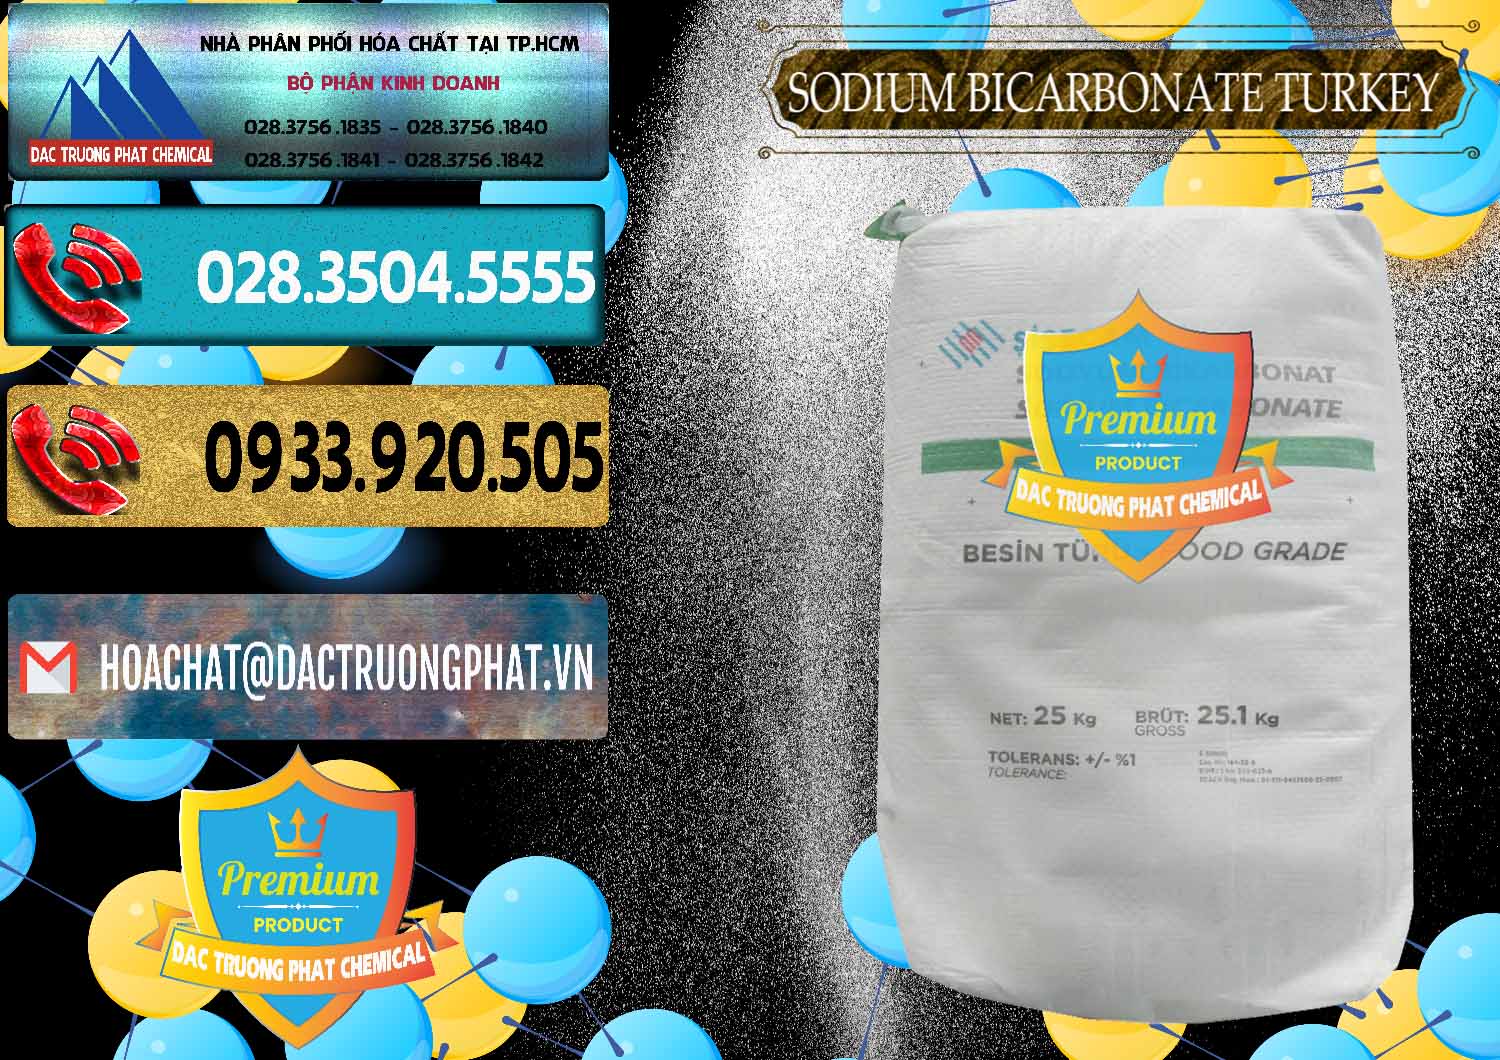 Cty chuyên cung cấp & bán Sodium Bicarbonate – Bicar NaHCO3 Food Grade Thổ Nhĩ Kỳ Turkey - 0219 - Đơn vị chuyên phân phối _ cung ứng hóa chất tại TP.HCM - hoachatdetnhuom.com